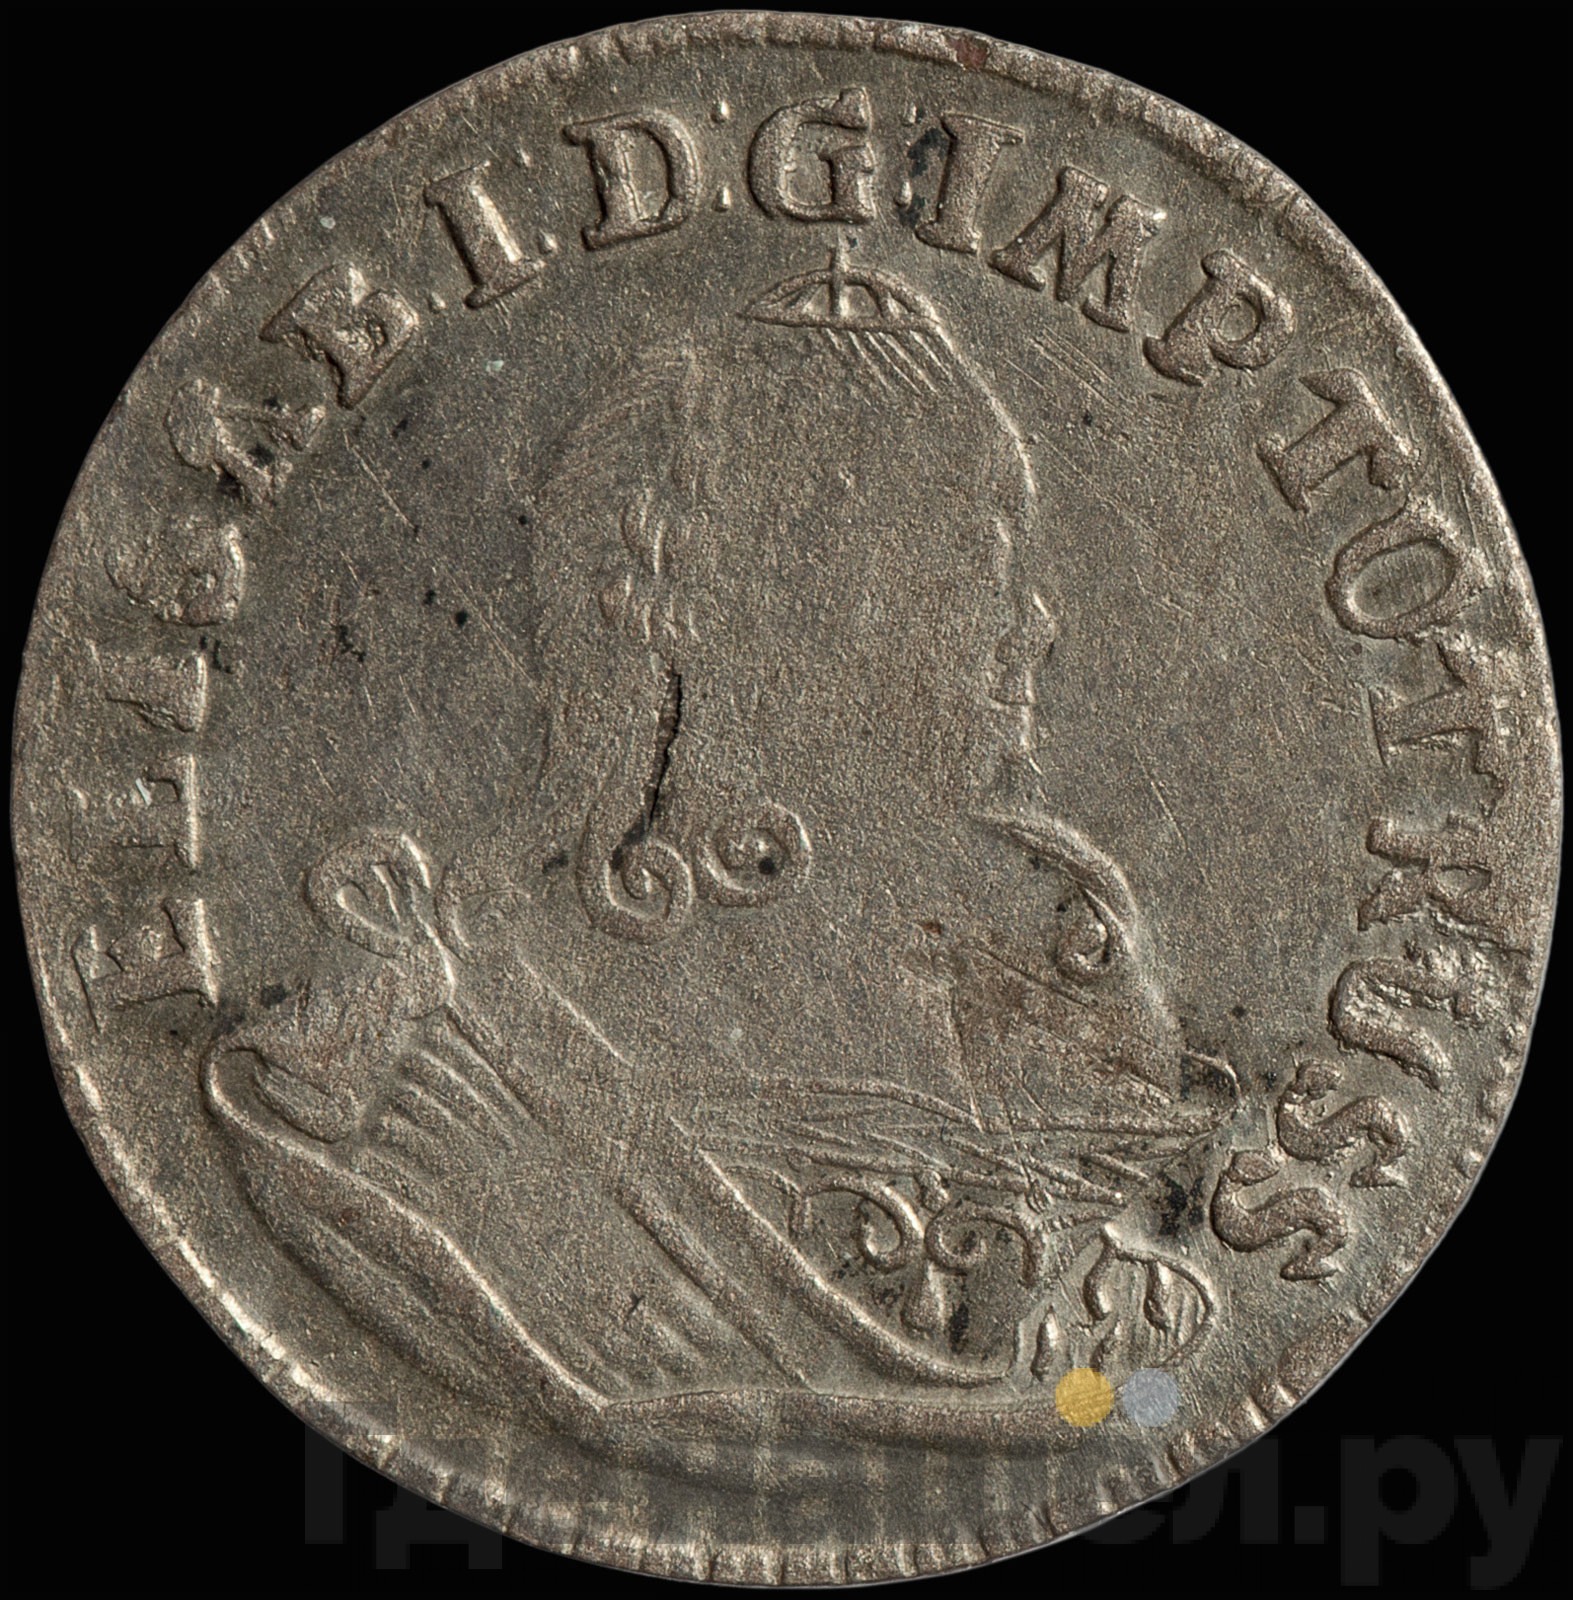 6 грошей 1760 года Для Пруссии